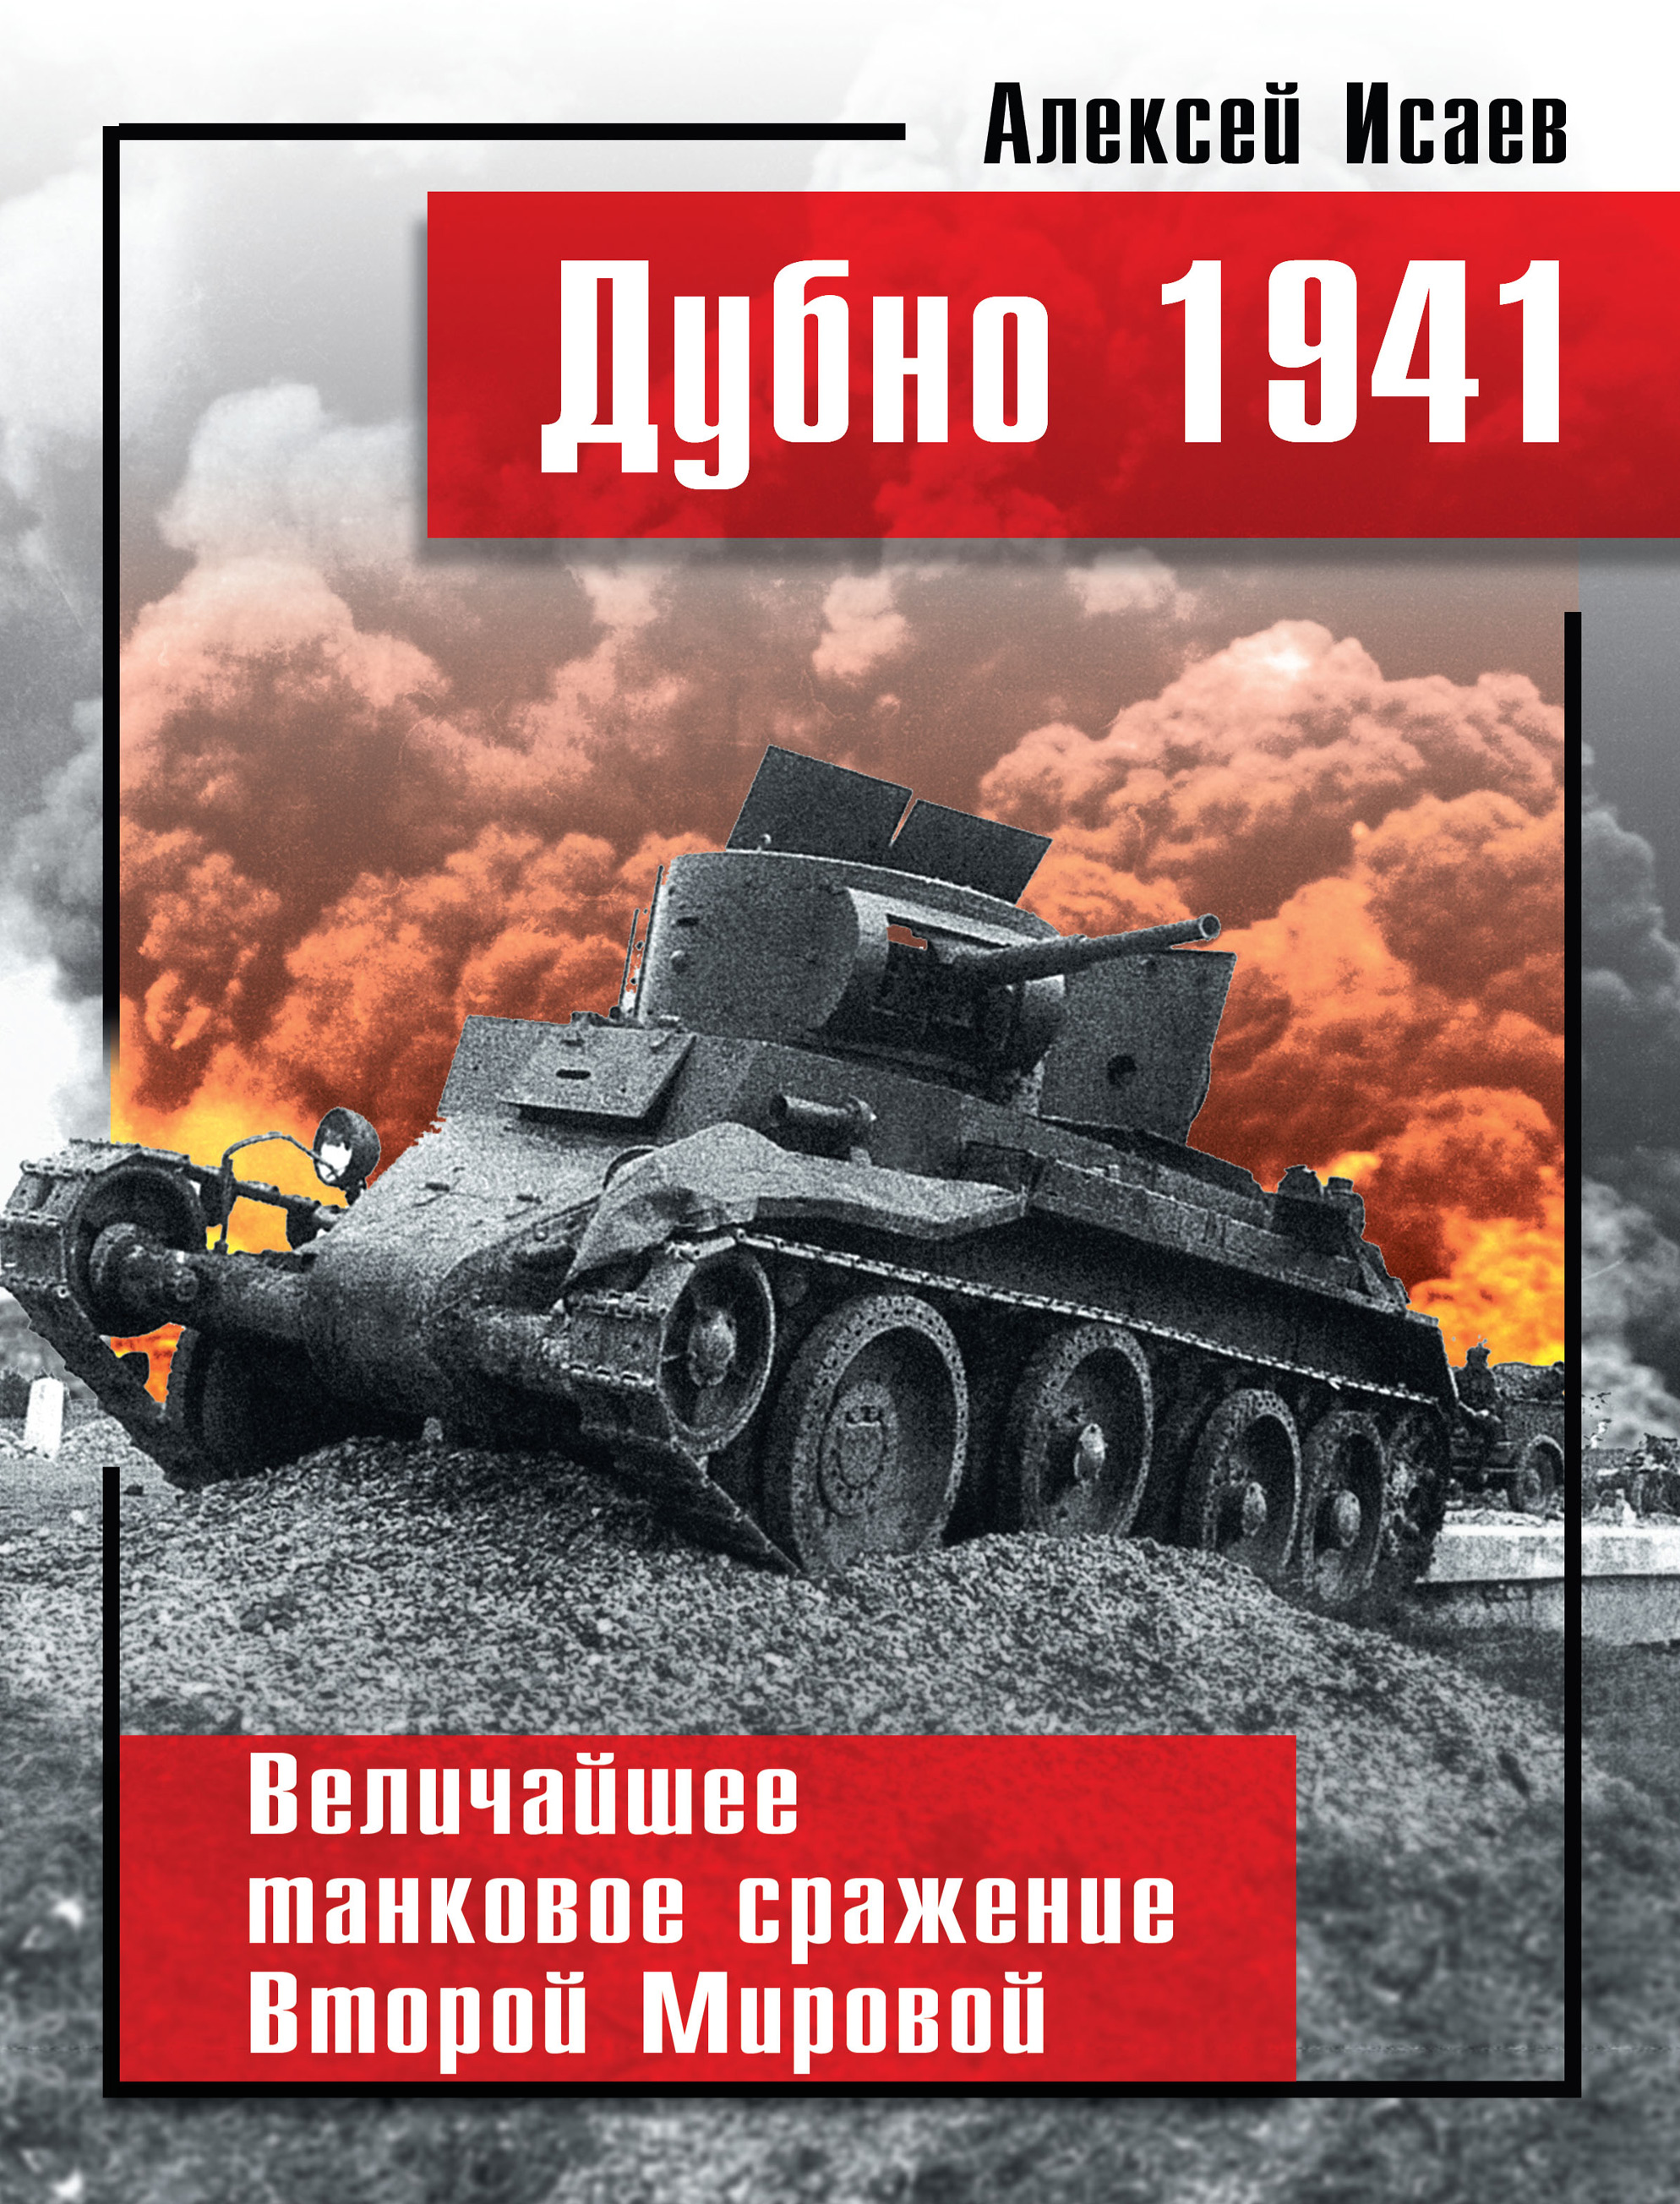 Великих сражений второй мировой. Исаев Дубно 1941 величайшее танковое сражение. Дубно-Луцк-Броды в 1941.